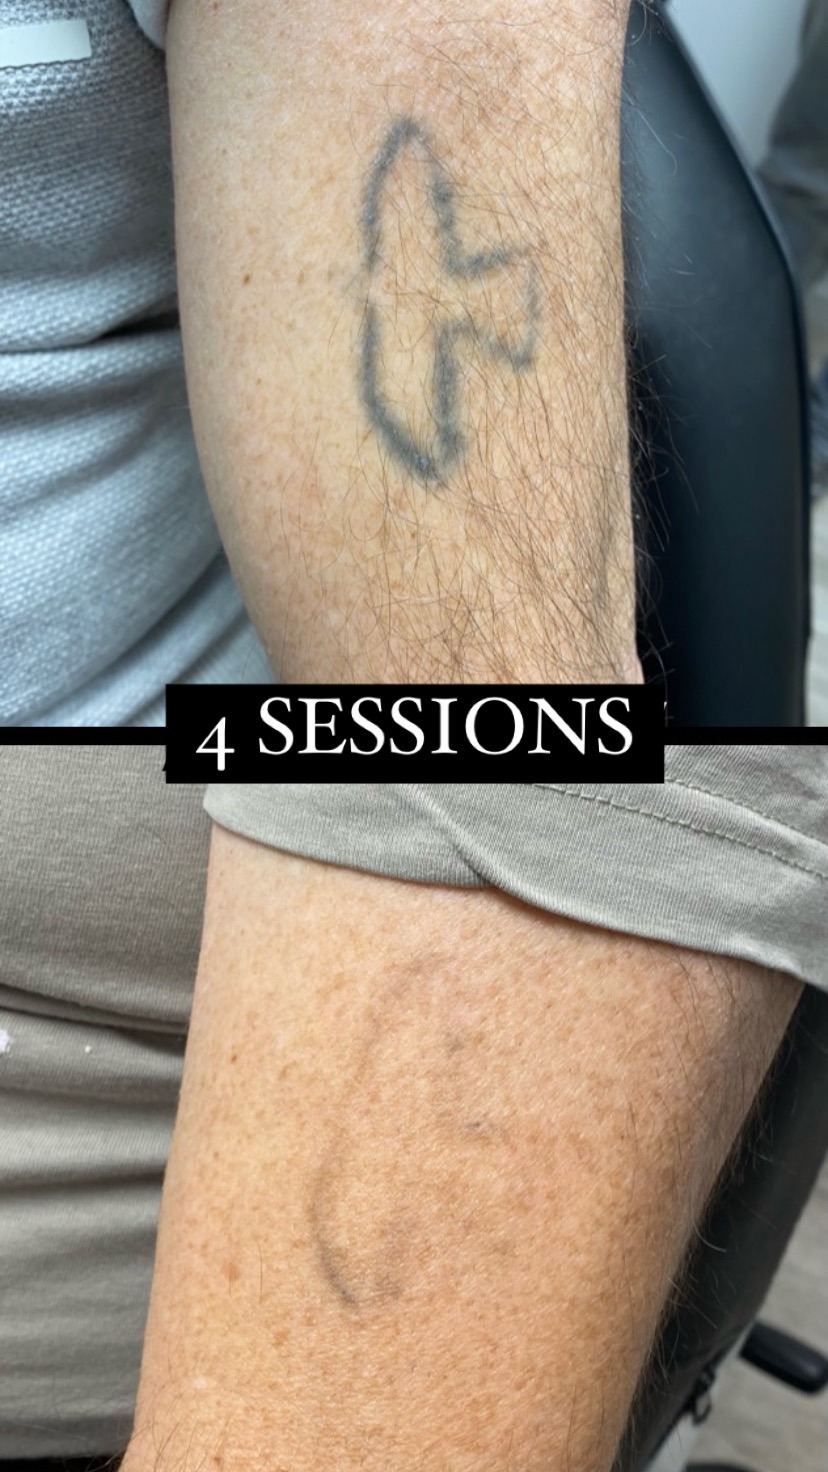 resultat del laser tattoo després d'unes sessions